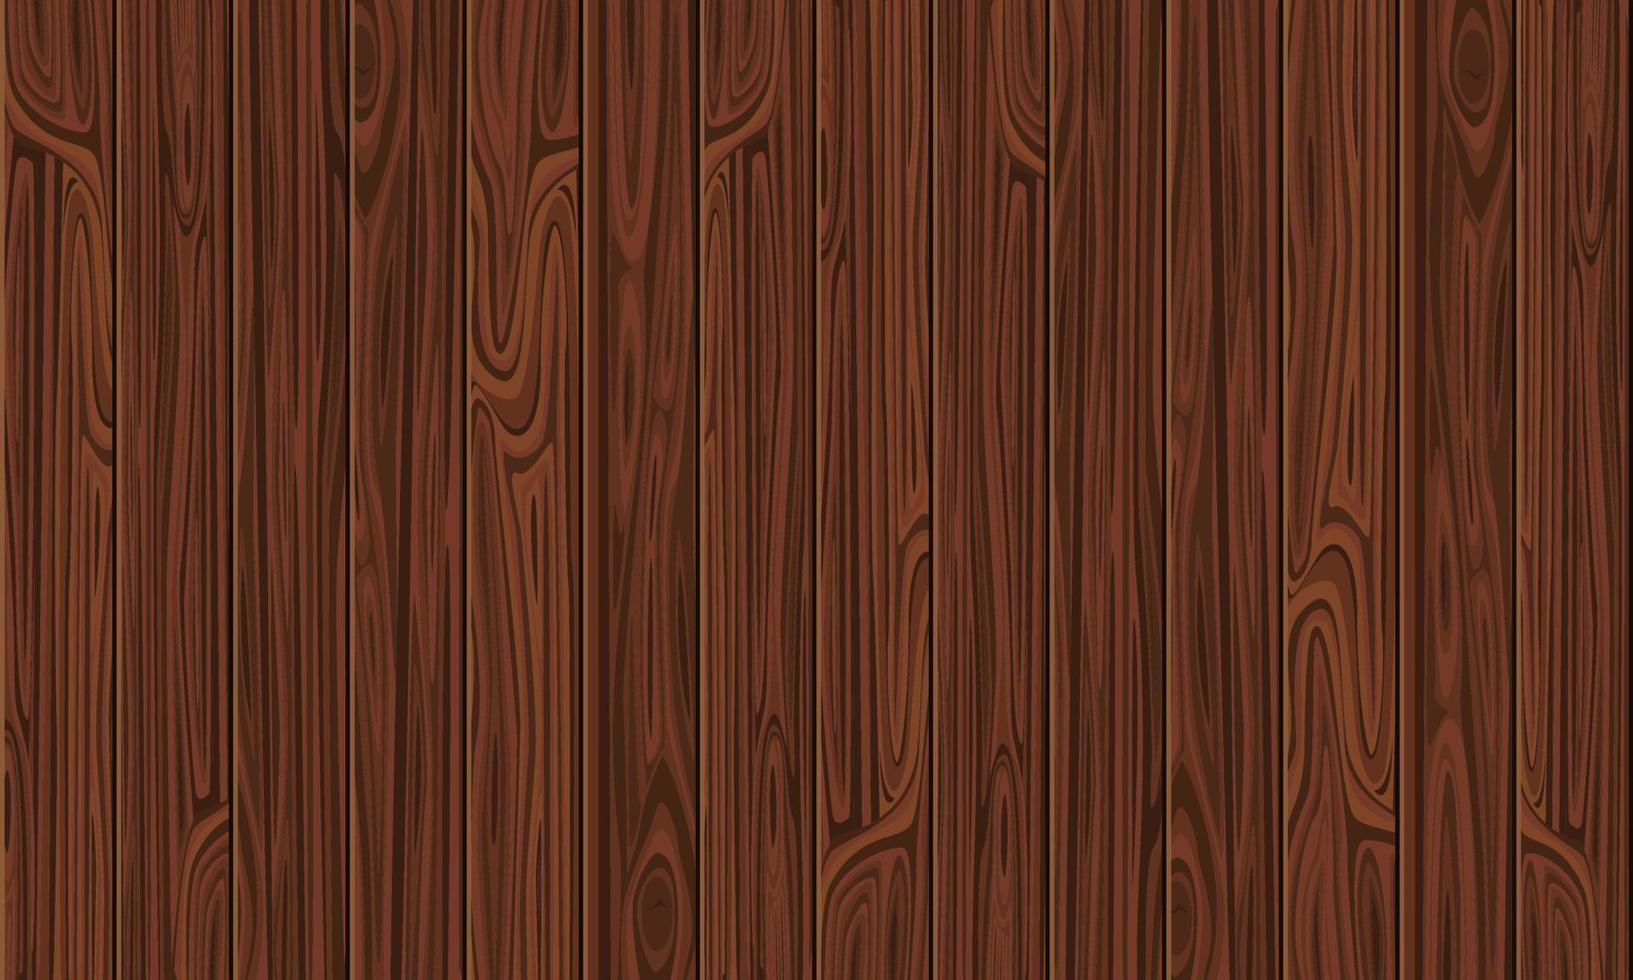 Hintergrund aus braunen vertikalen Holzbohlen, Holzstruktur. bannerdesign mit kopierraum. Vektorvorratillustration. vektor